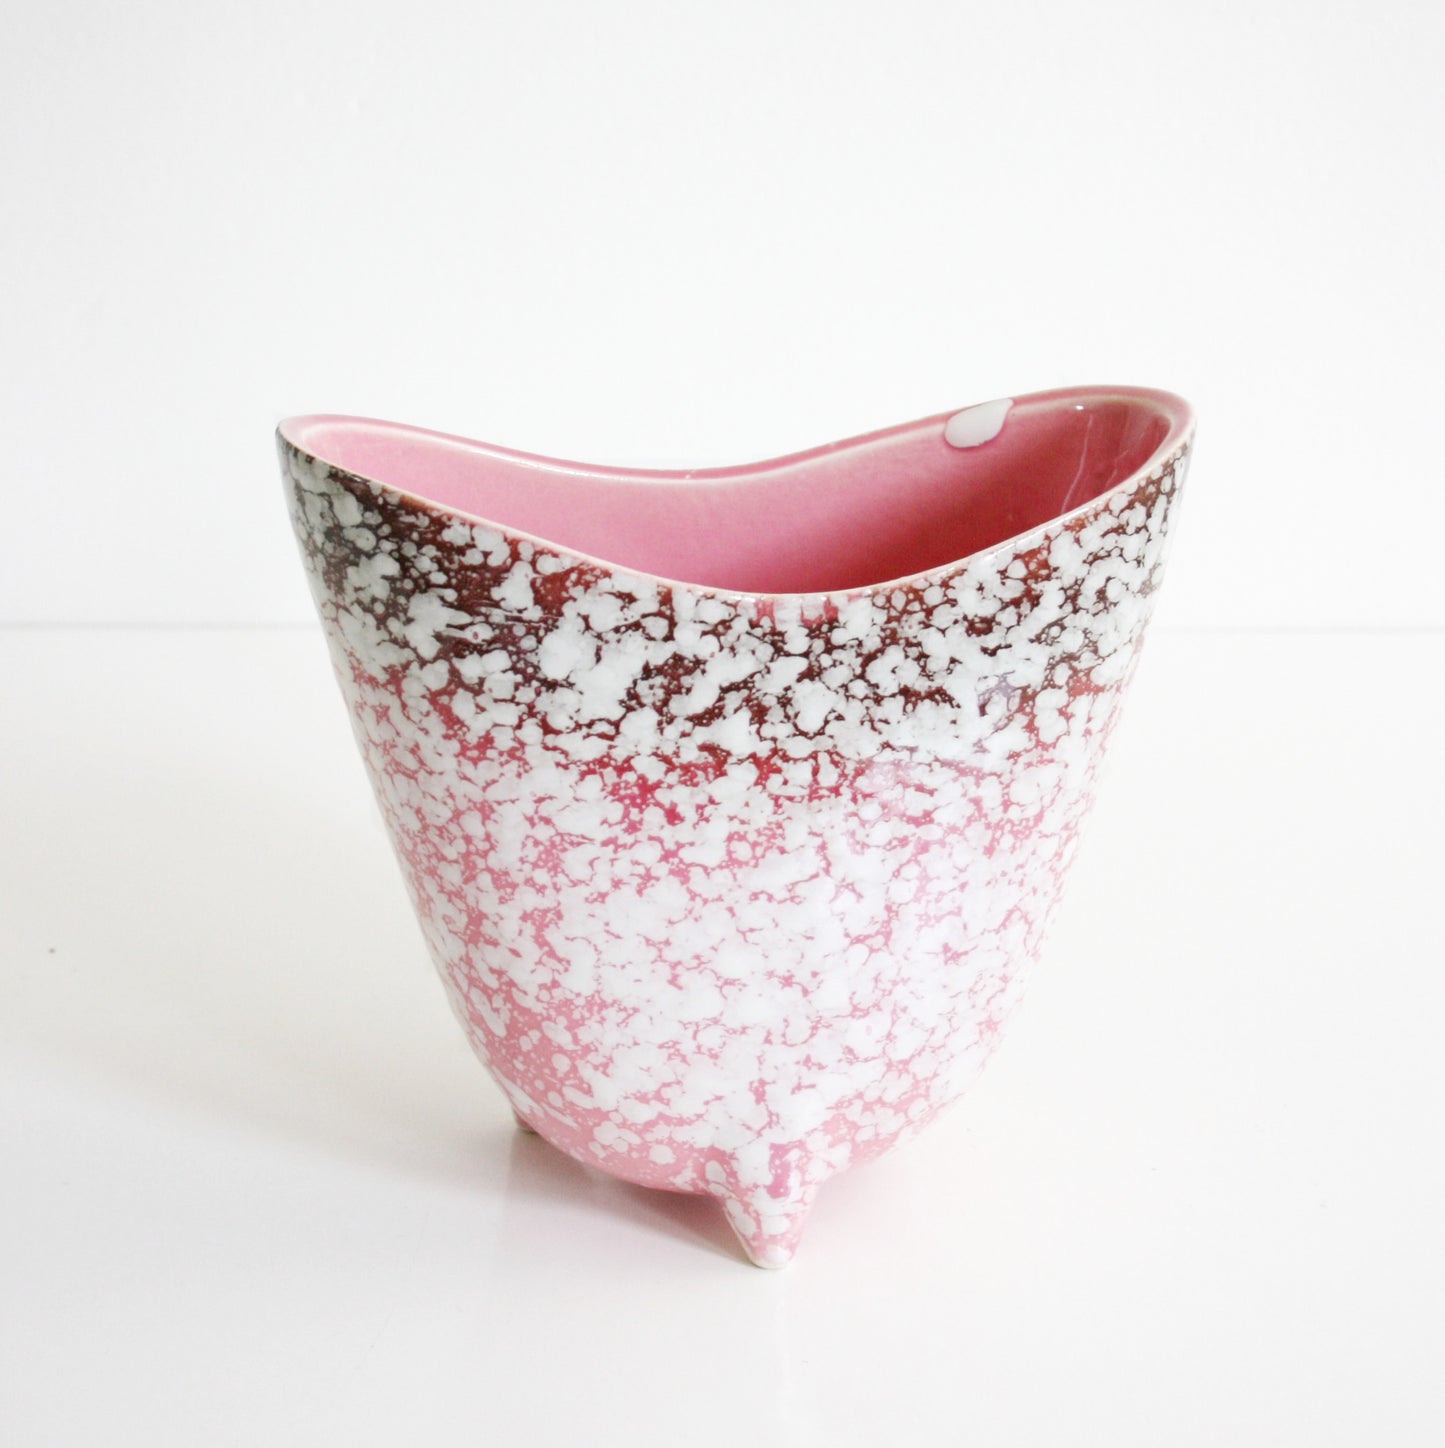 SOLD - Mid Century Modern Pink Speckled Tripod Planter / Vintage Pink Ceramic Flower Pot